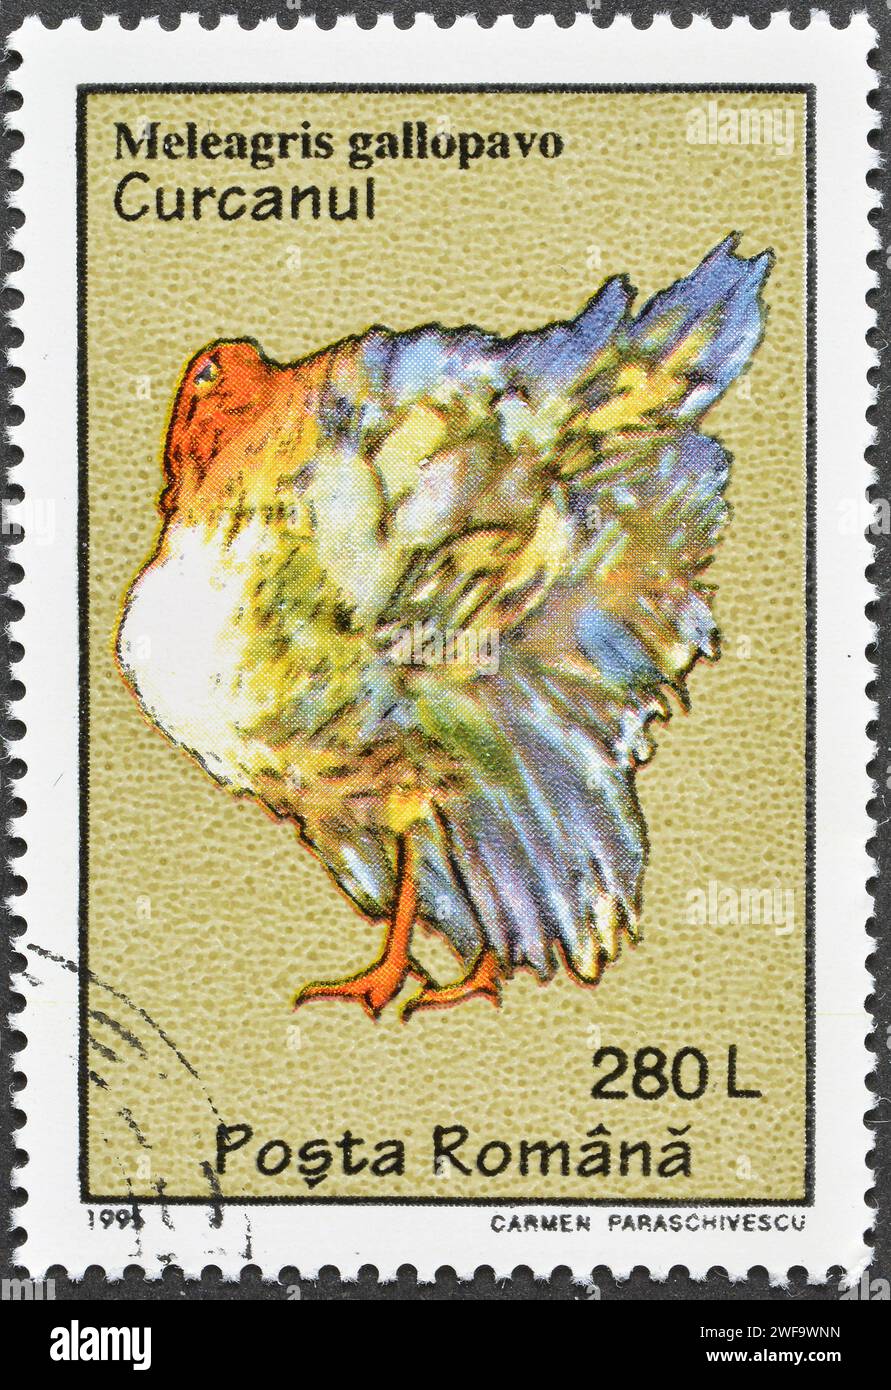 Francobollo cancellato stampato dalla Romania, che mostra la Turchia addomesticata (Meleagris gallopavo), intorno al 1995. Foto Stock